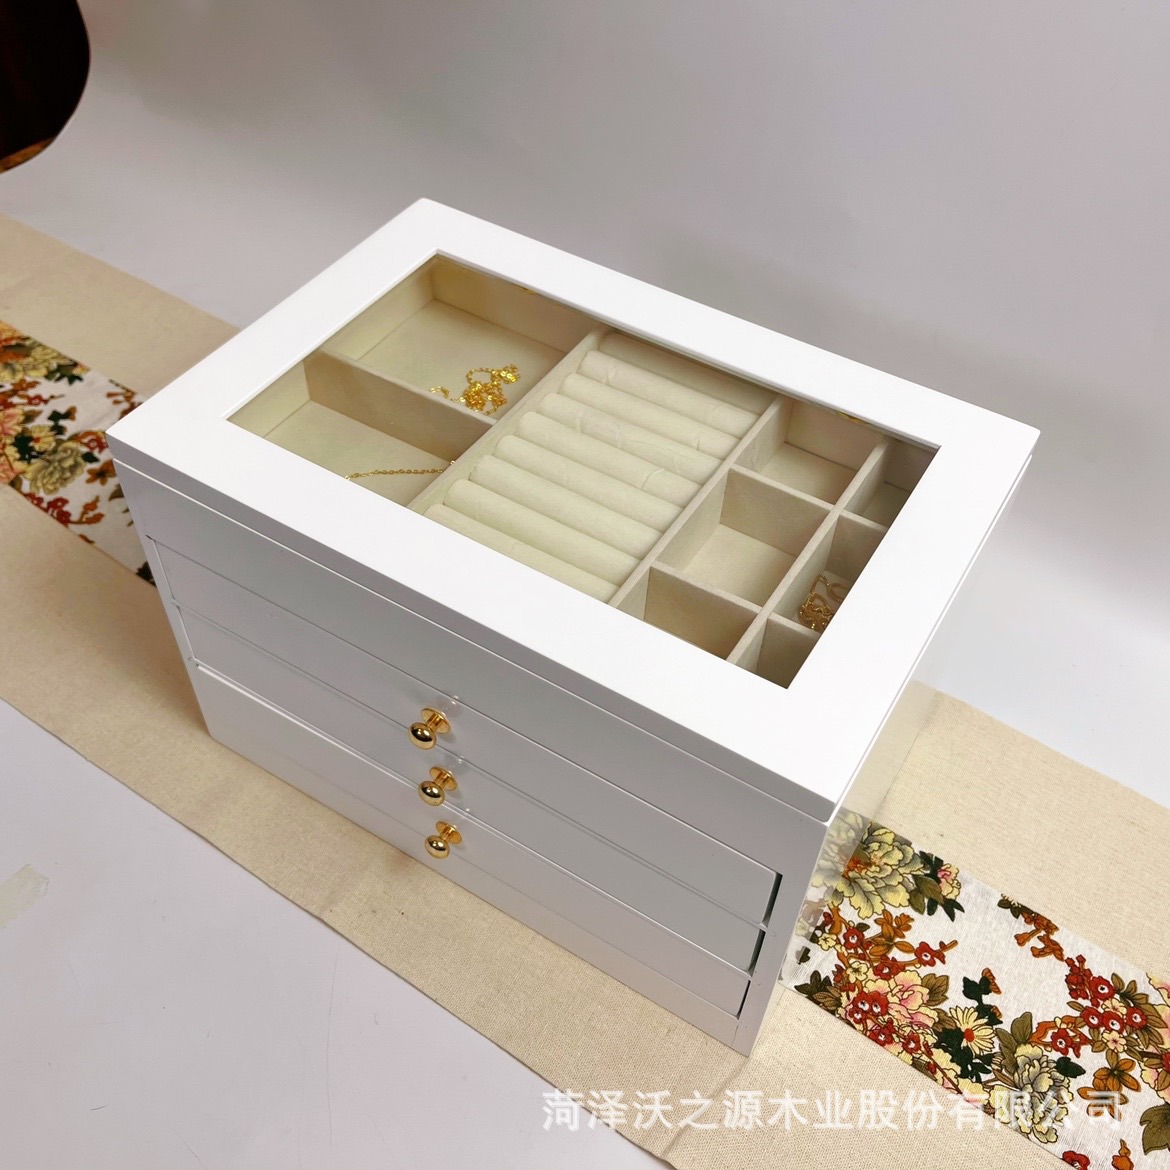 厂家生产首饰收纳木盒可定做多层翻盖收纳盒玻璃抽屉木质首饰盒